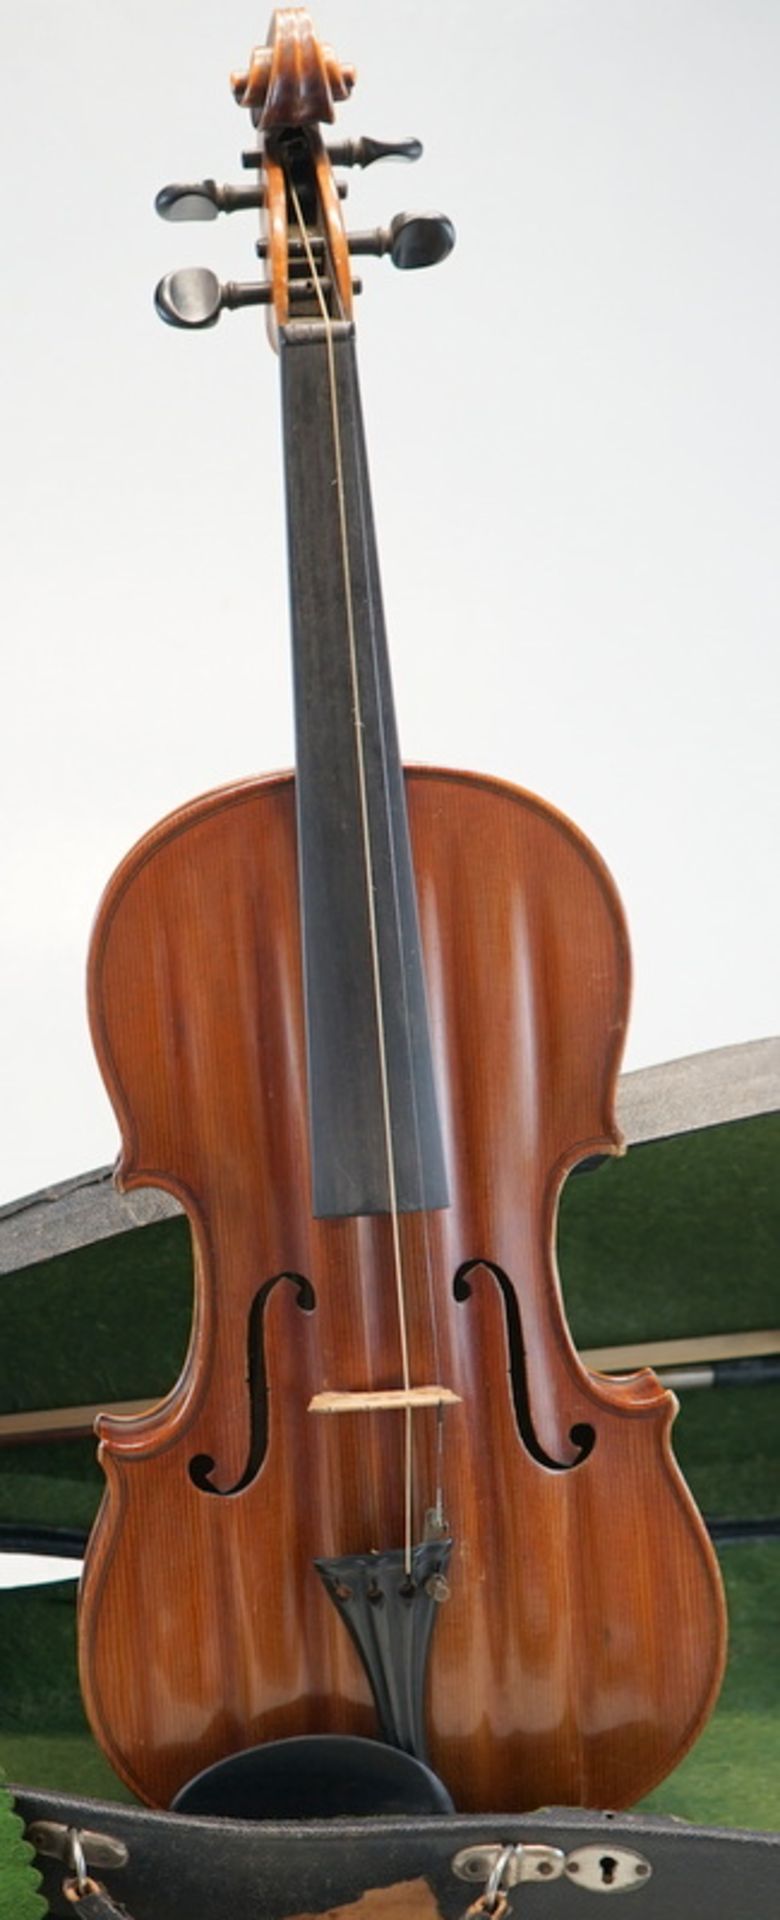 Violine von 1919 nach älterm Vorbild -Sammlung Hermann Schreyer - Image 2 of 3